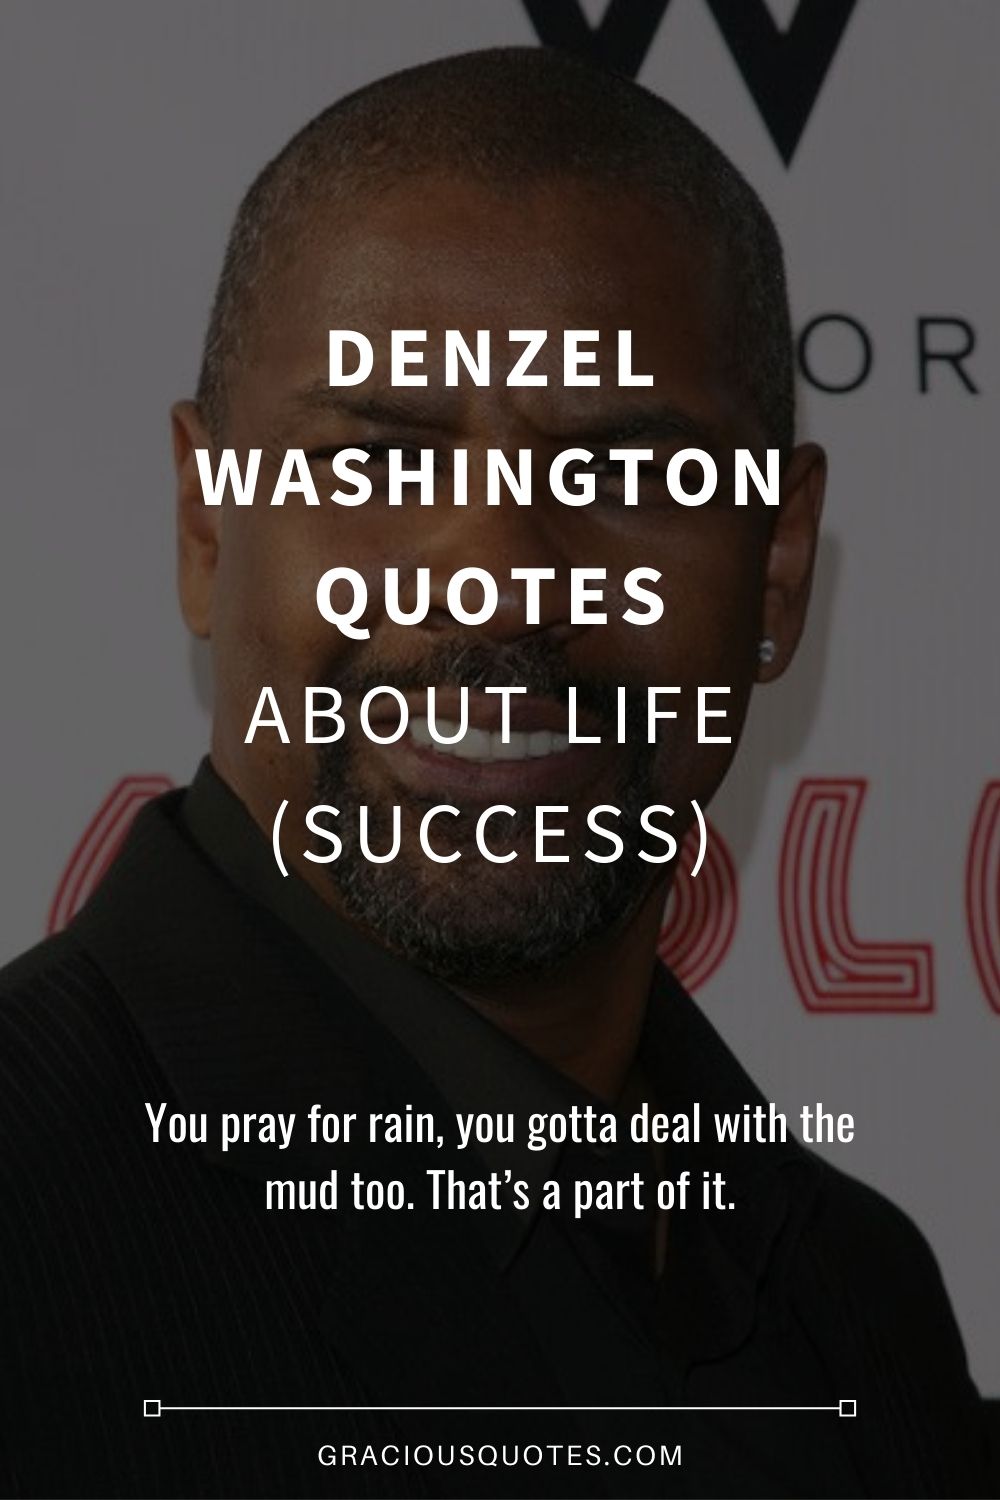 Denzel Washington Quotes About Life (SUCCESS) - Gracious Quotes